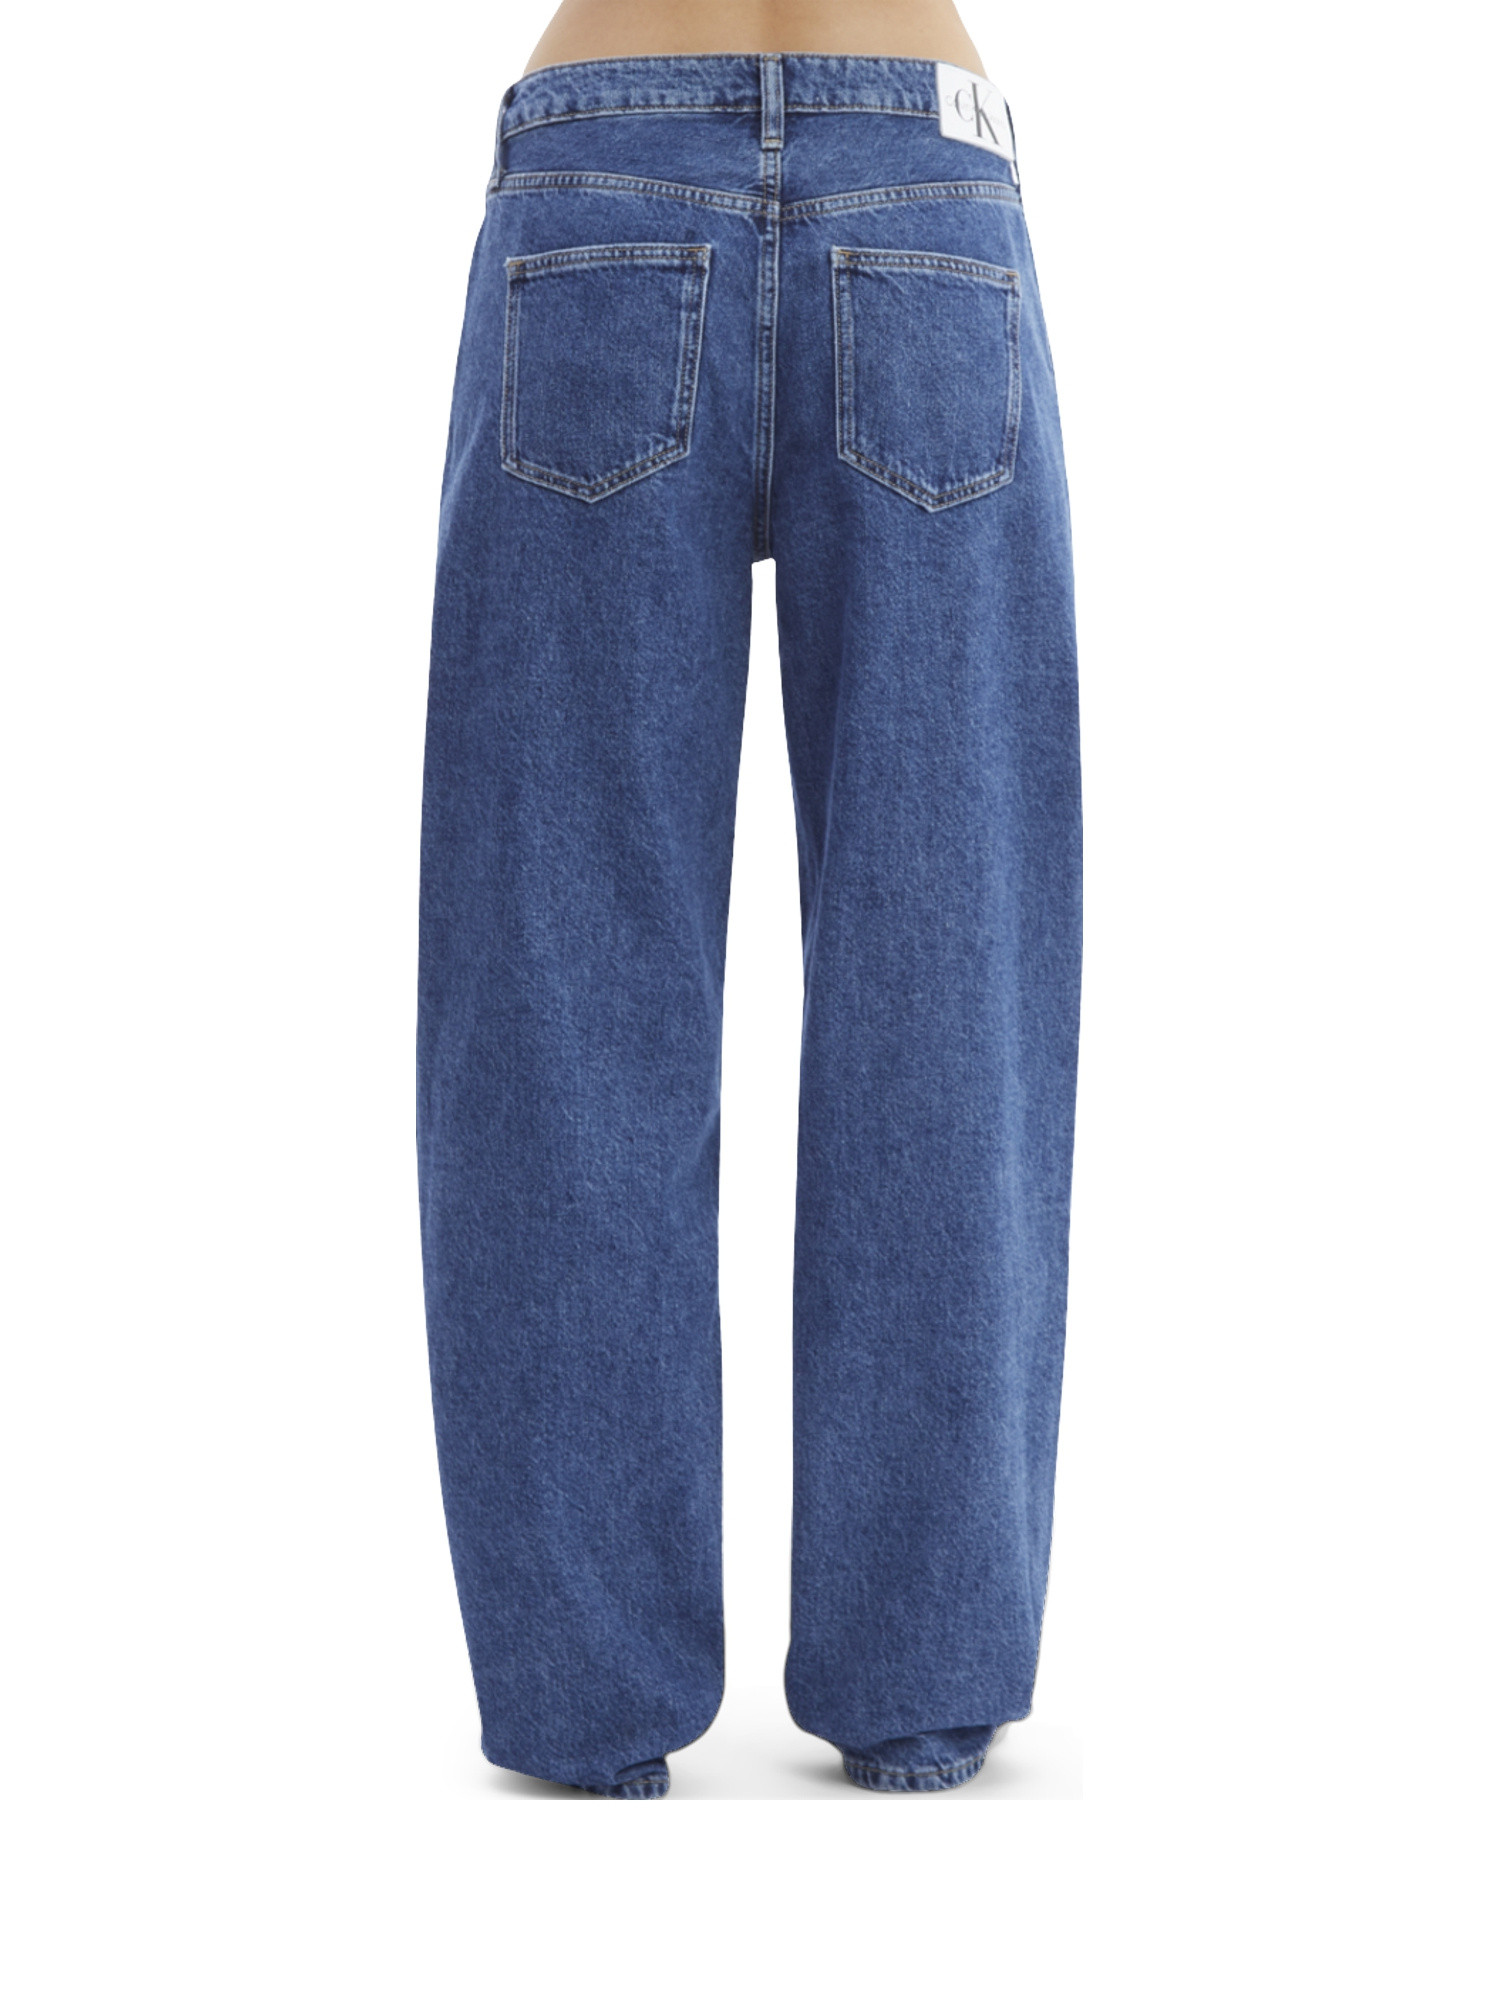 Jeans anni 90', Denim, large image number 5